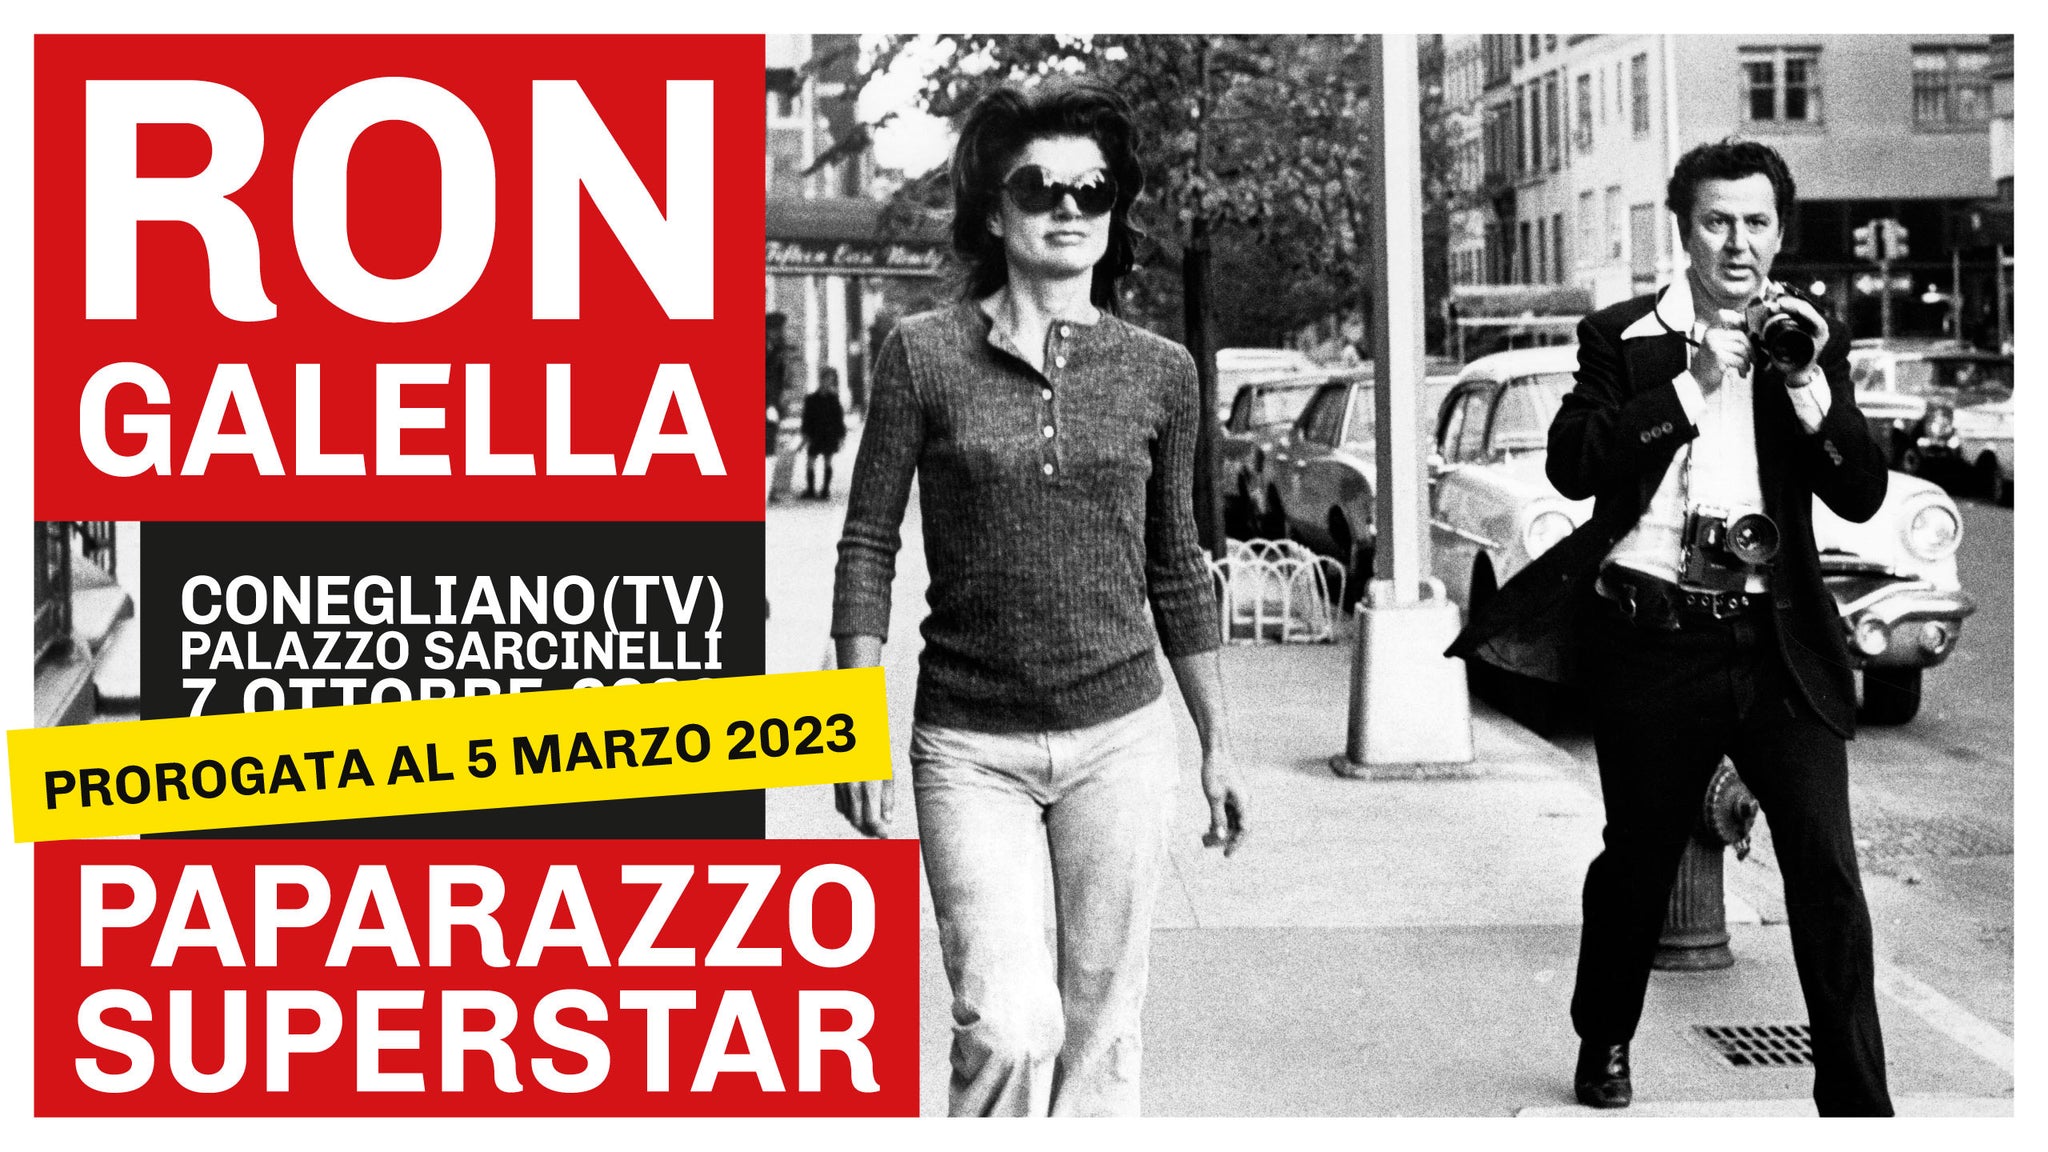 Ron Galella Paparazzo Superstar proroga 5 marzo